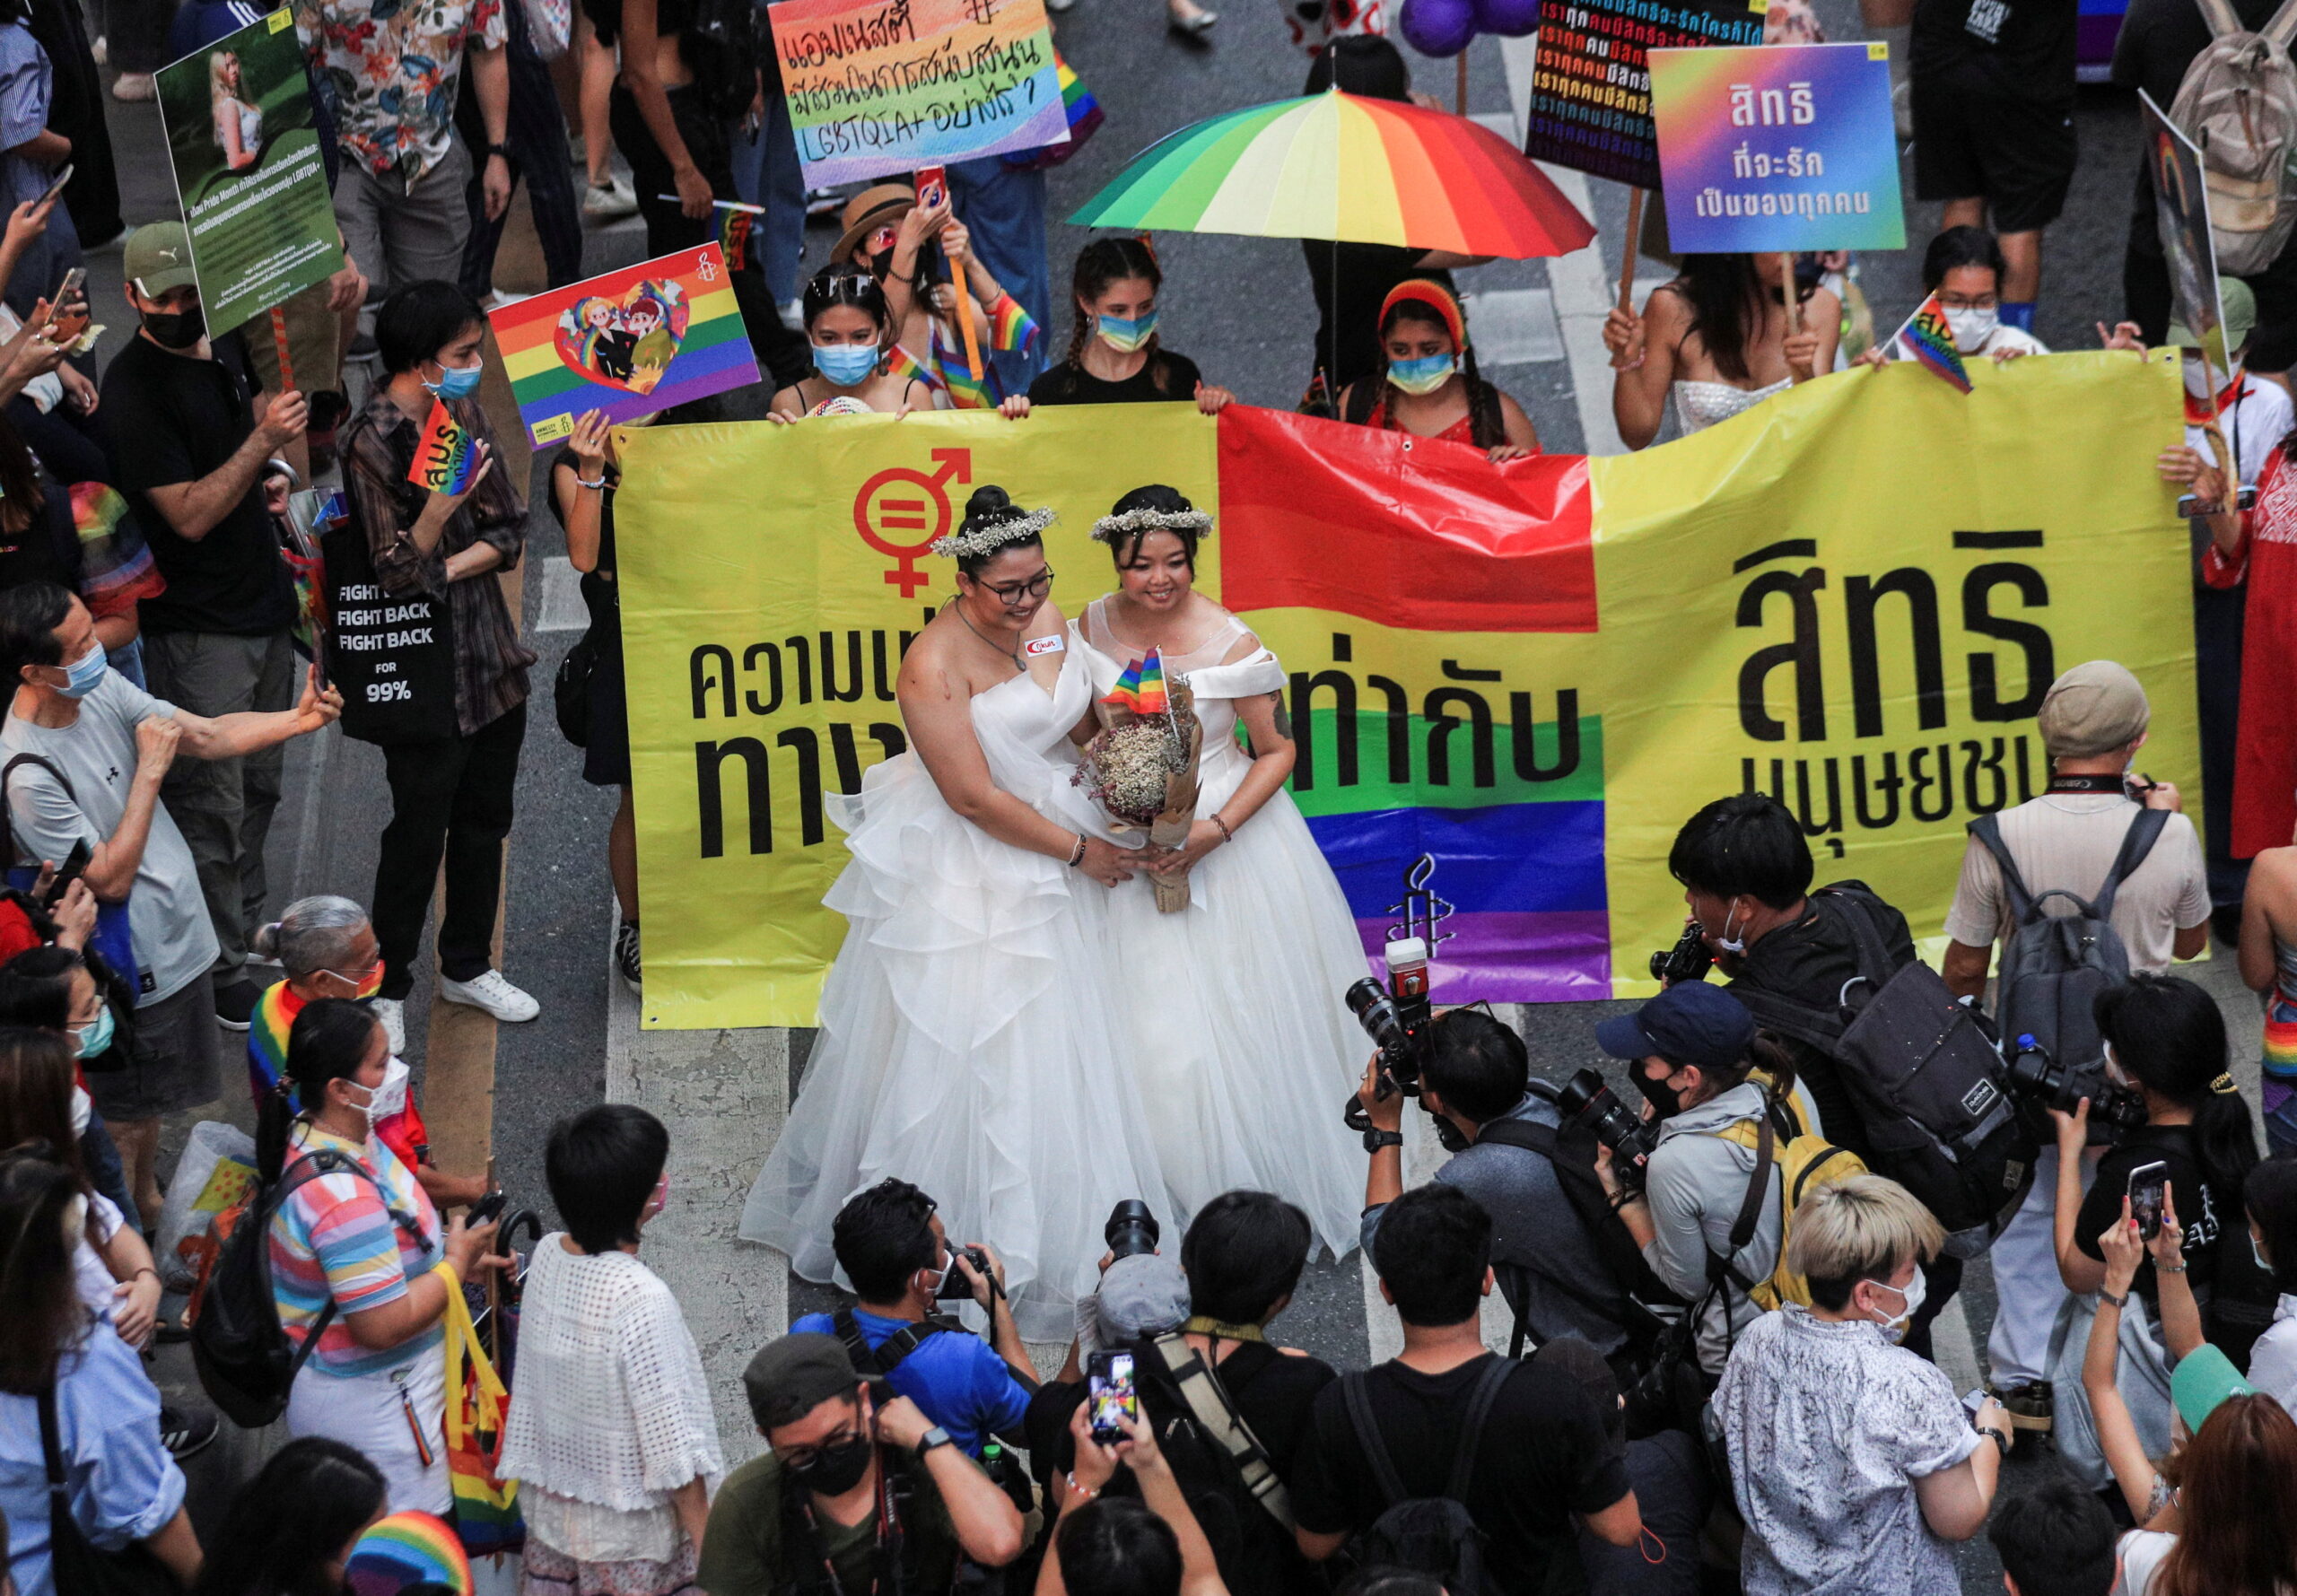 ประชาชนเข้าร่วมขบวนพาเหรด LGBTQ Pride ในกรุงเทพฯ